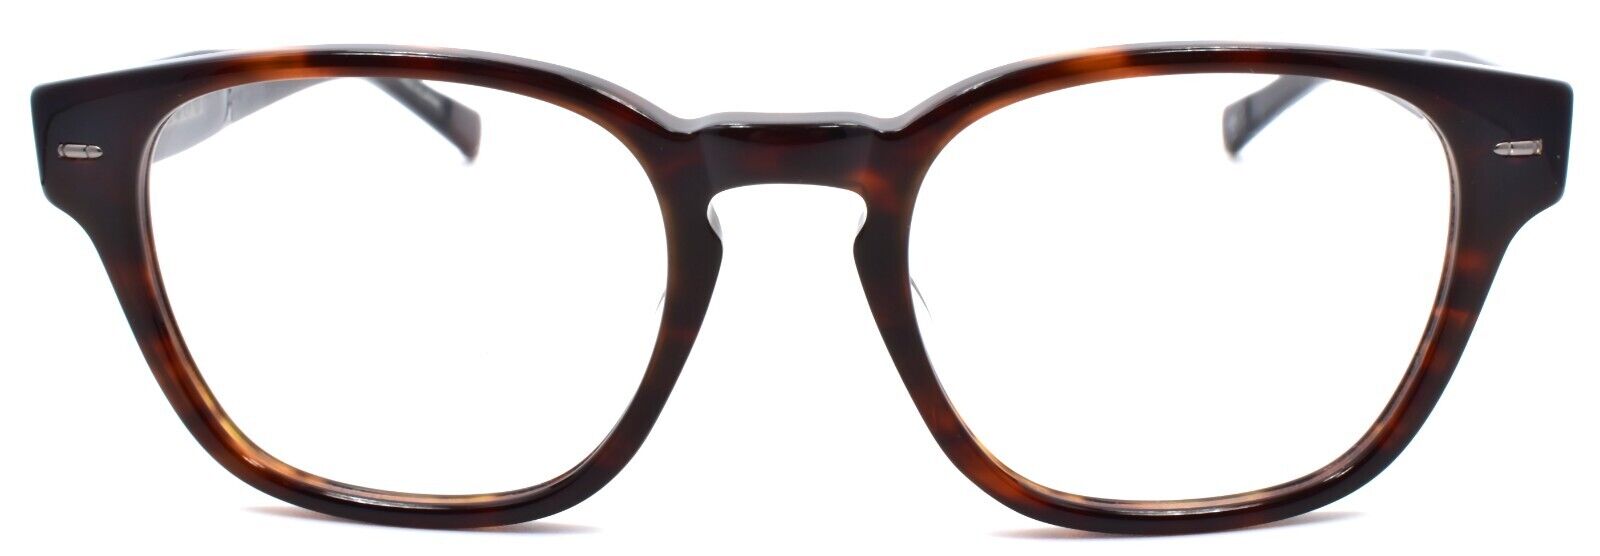 2-John Varvatos V369 Men's Eyeglasses Frames 51-20-145 Brown Japan-751286305517-IKSpecs